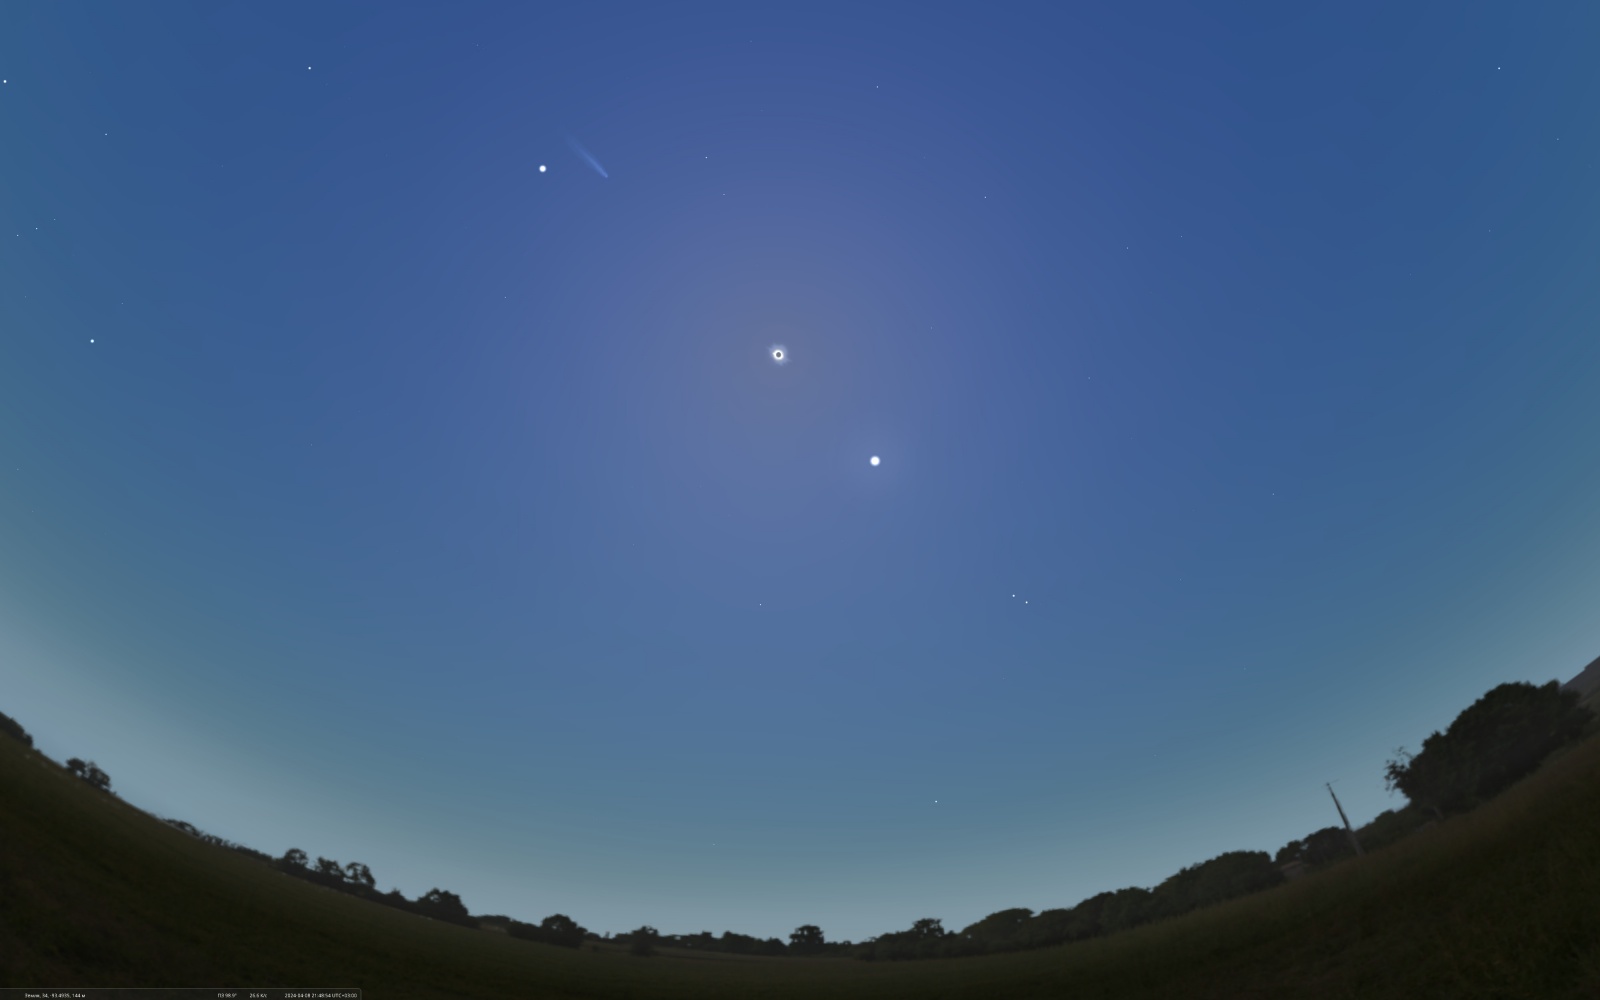 Наискосок - сверху вниз, и слева направо: Юпитер, комета Понса-Брукса, Солнце затменное Луной, Венера, Сатурн, Марс. Внизу у горизонта Фомальгаут